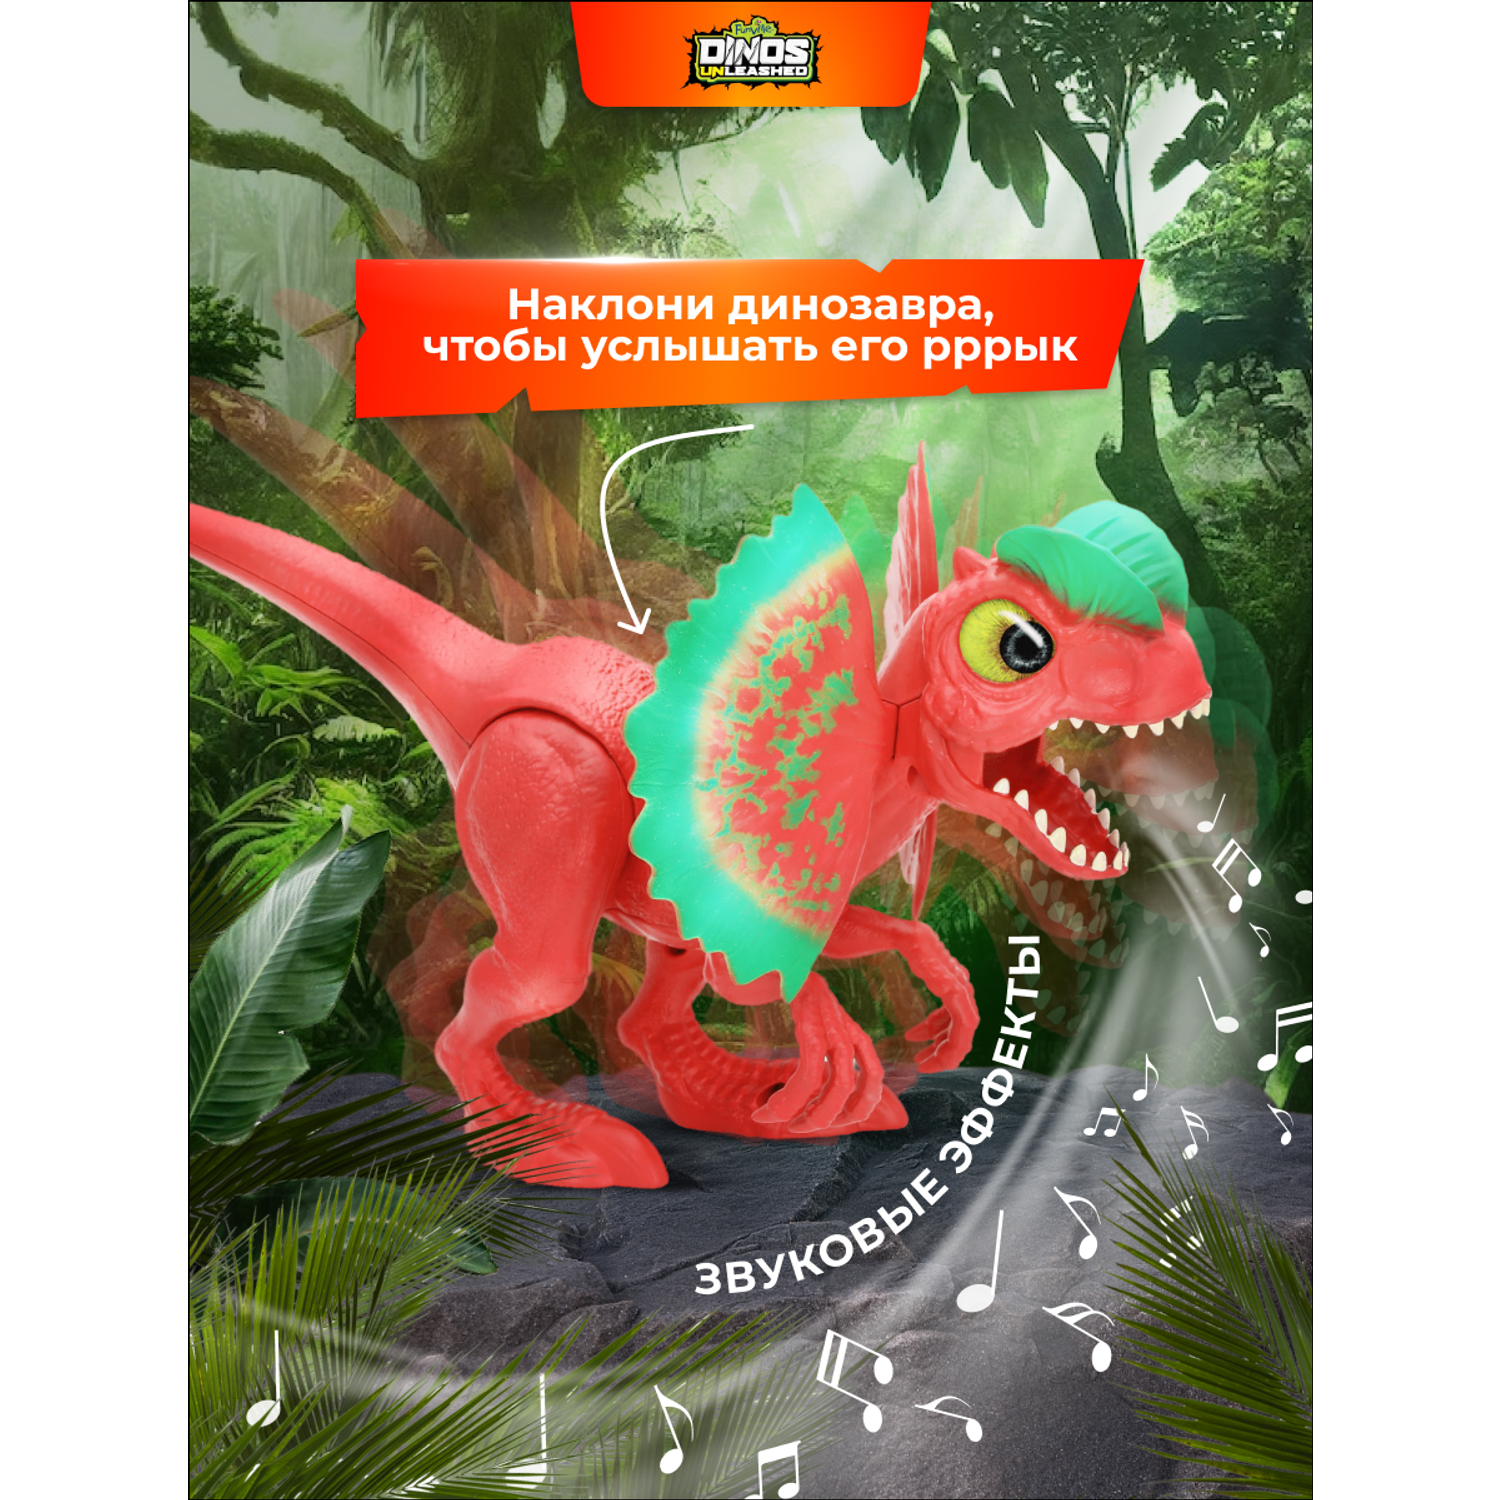 Фигурка динозавра Dinos Unleashed Дилофозавр со звуковыми эффектами - фото 5